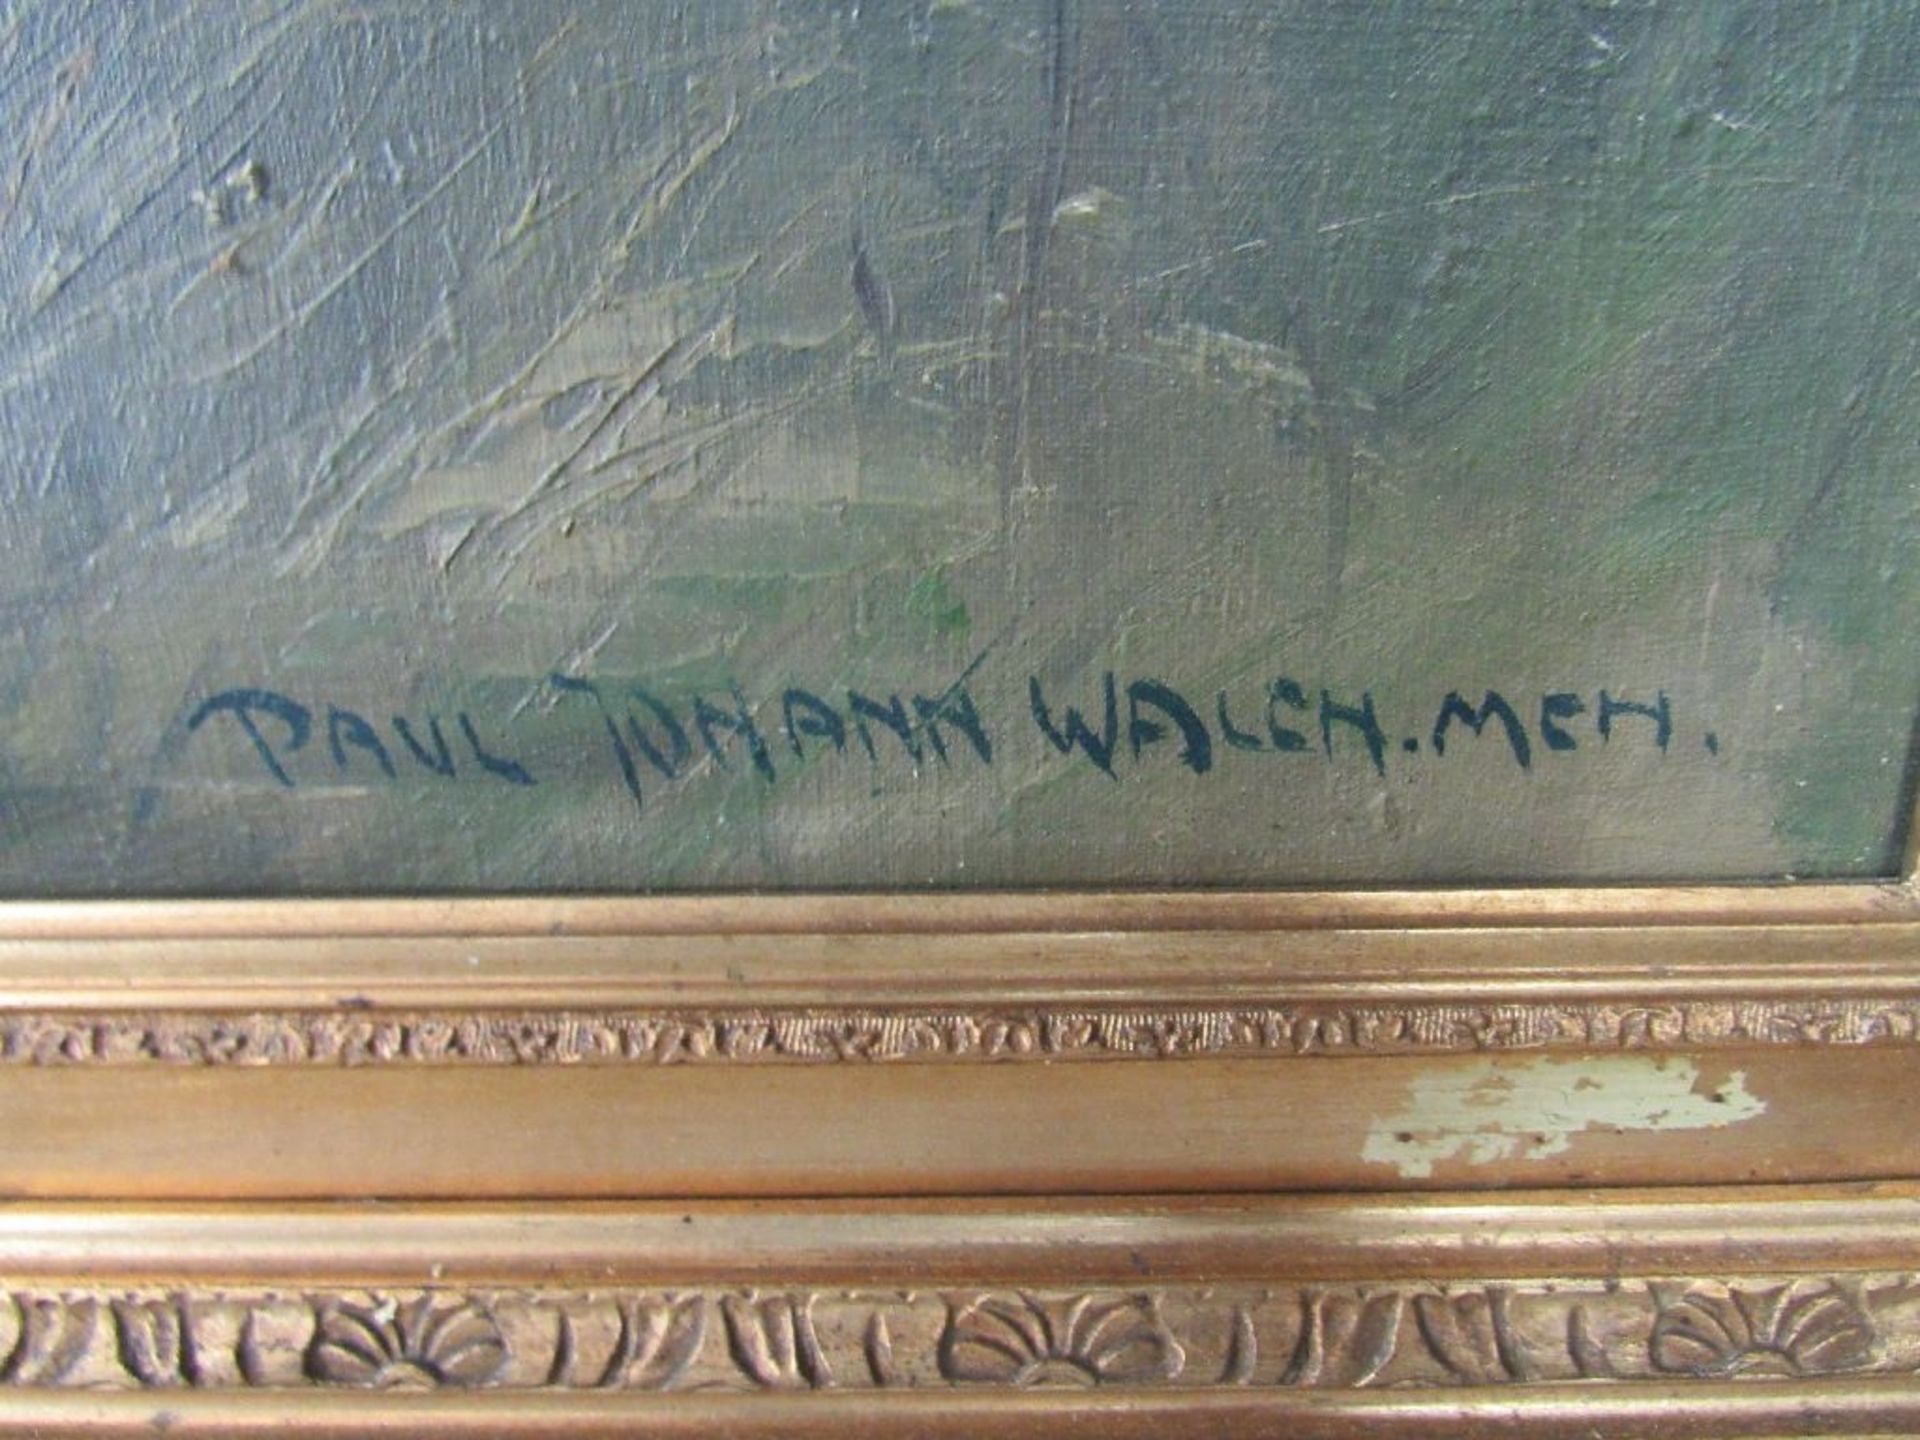 Ölgemälde Öl auf Leinwand signiert Paul Johan Walch.Meh.in originaler Leiste stehender Hirsch ca. - Bild 2 aus 7